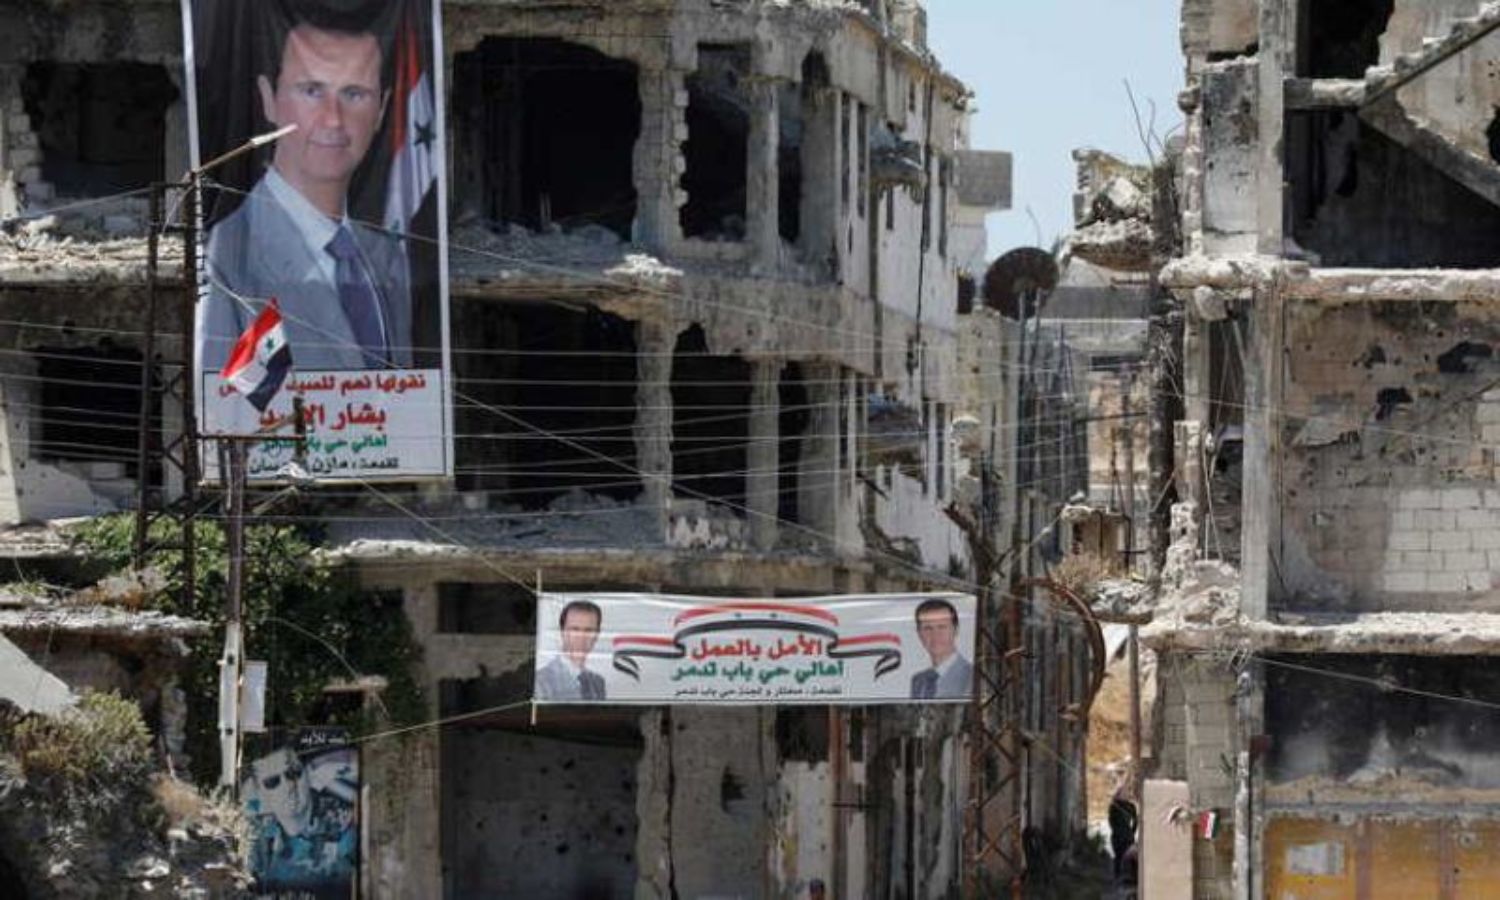 صور رئيس النظام، بشار الأسد، تتدلى من المباني التي دمرتها المعارك في مدينة حمص وسط سوريا- (رويترز)